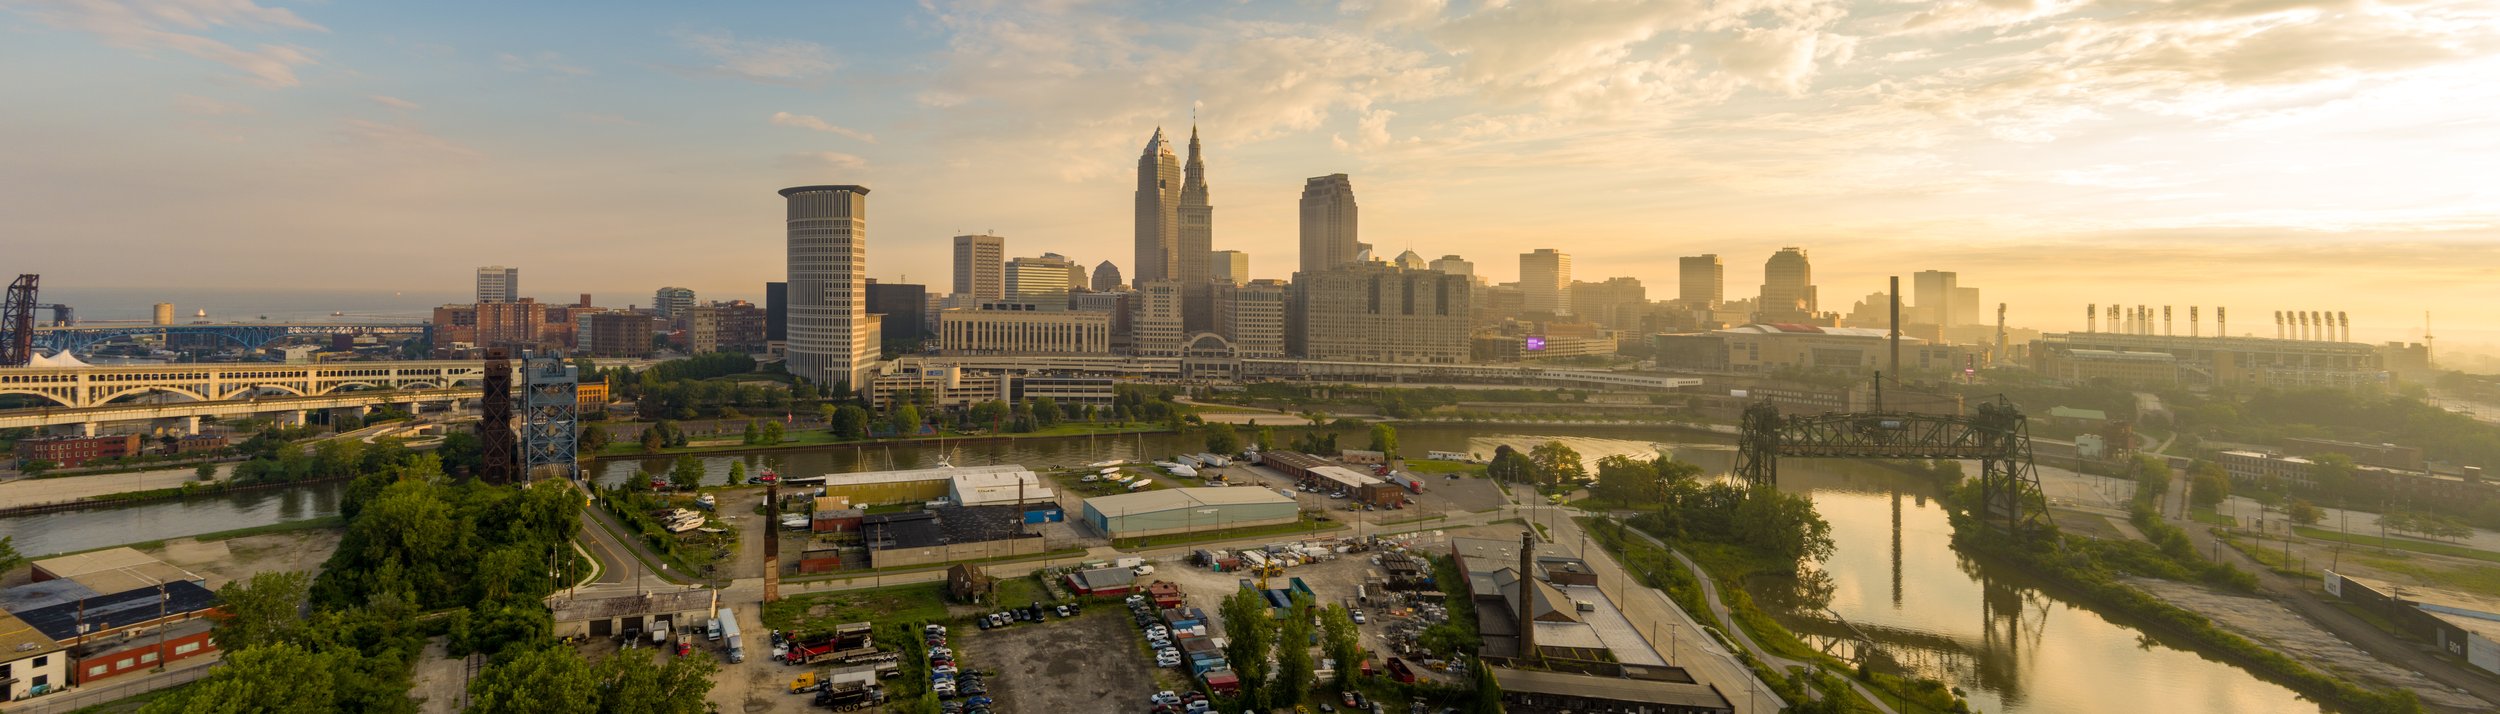 Cleveland Ohio Skyline - Sunrise 